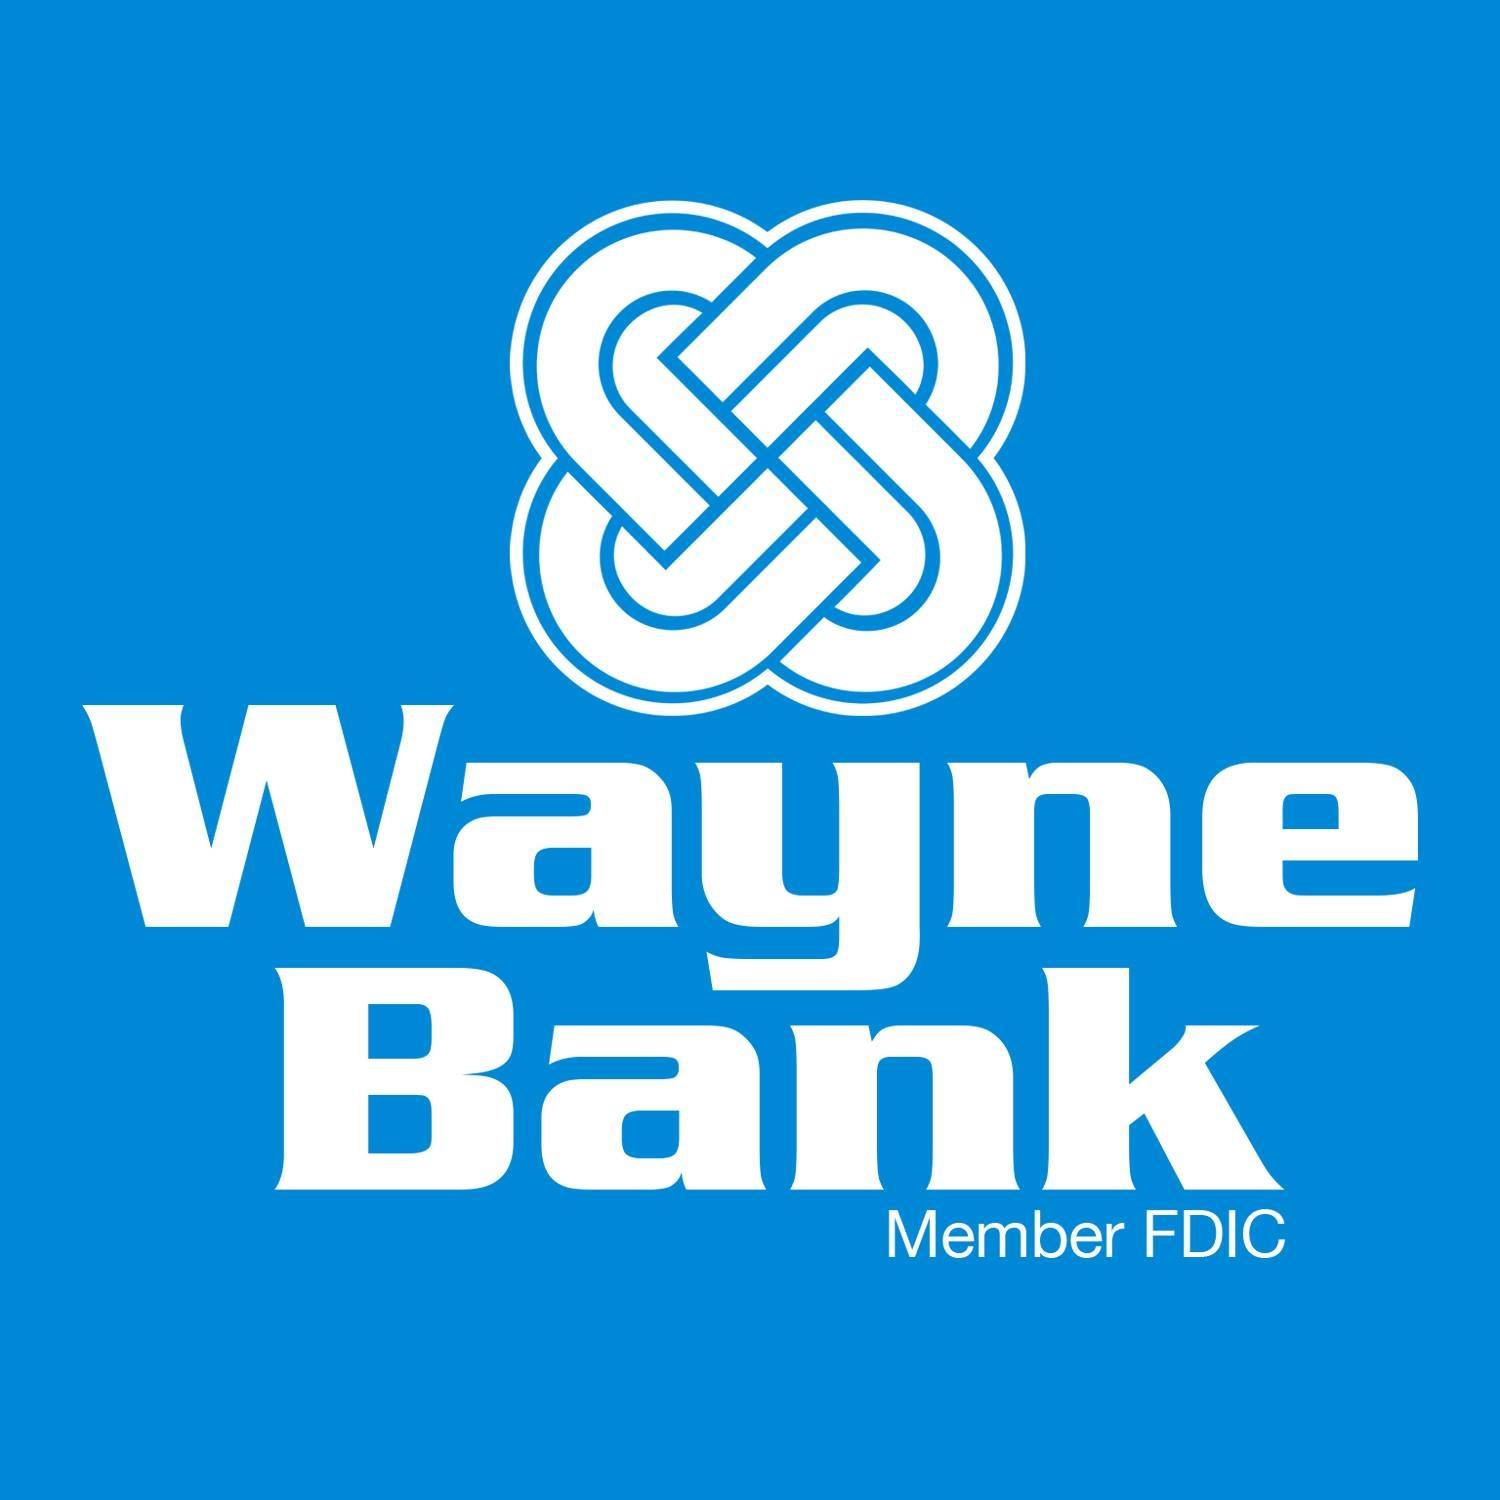 Wayne Bank logo